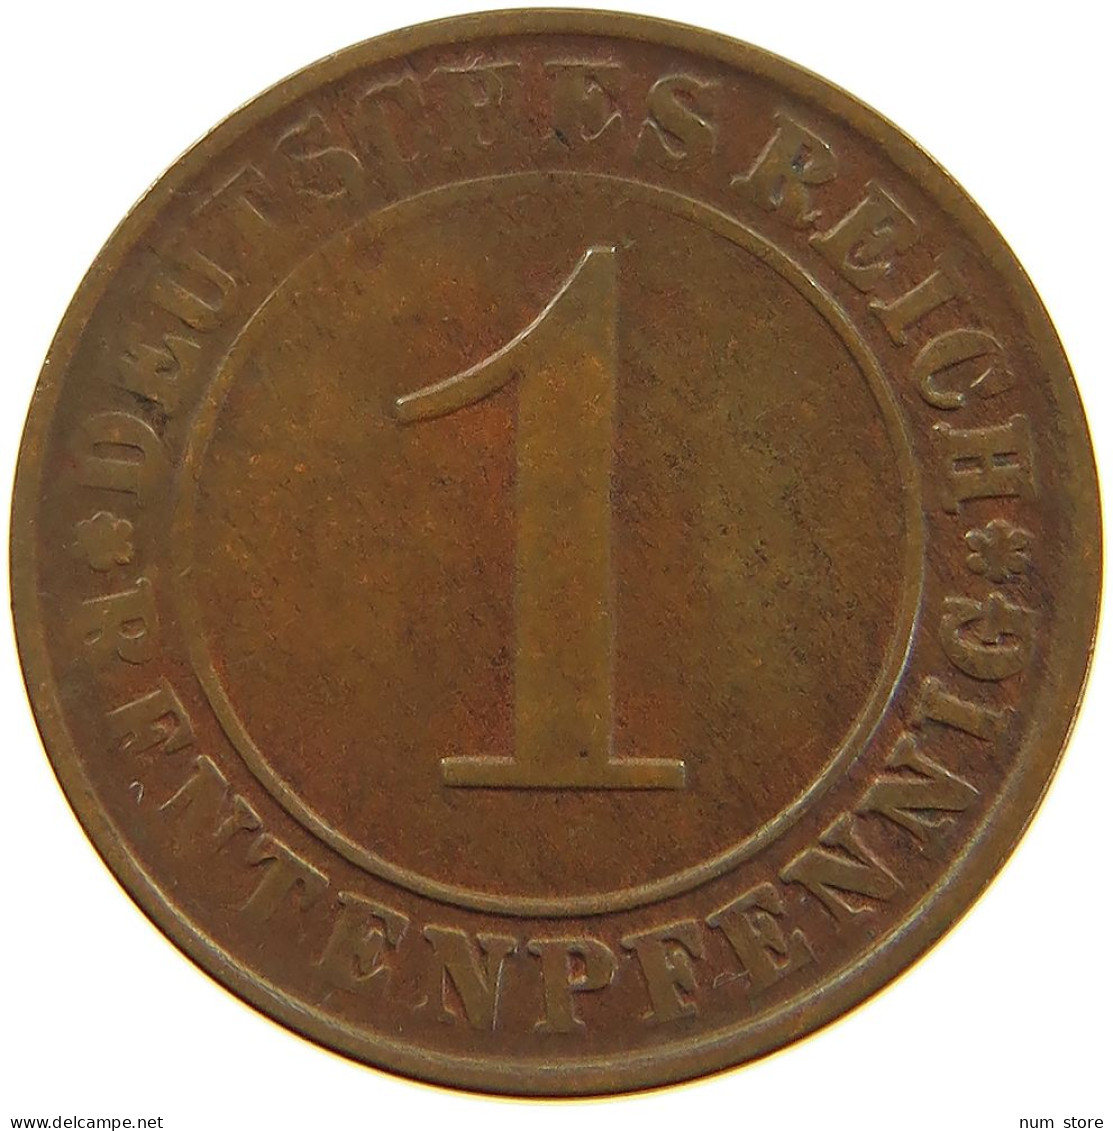 WEIMARER REPUBLIK PFENNIG 1924 J WEAK STRUCK #a074 0689 - 1 Rentenpfennig & 1 Reichspfennig